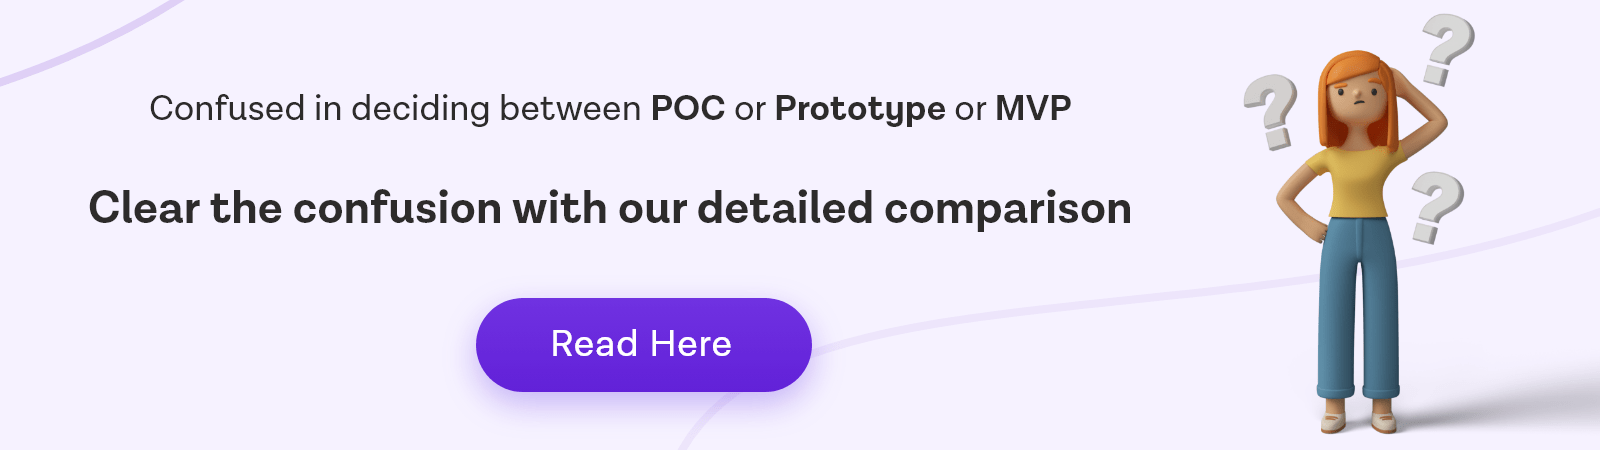 POC or Prototype or MVP